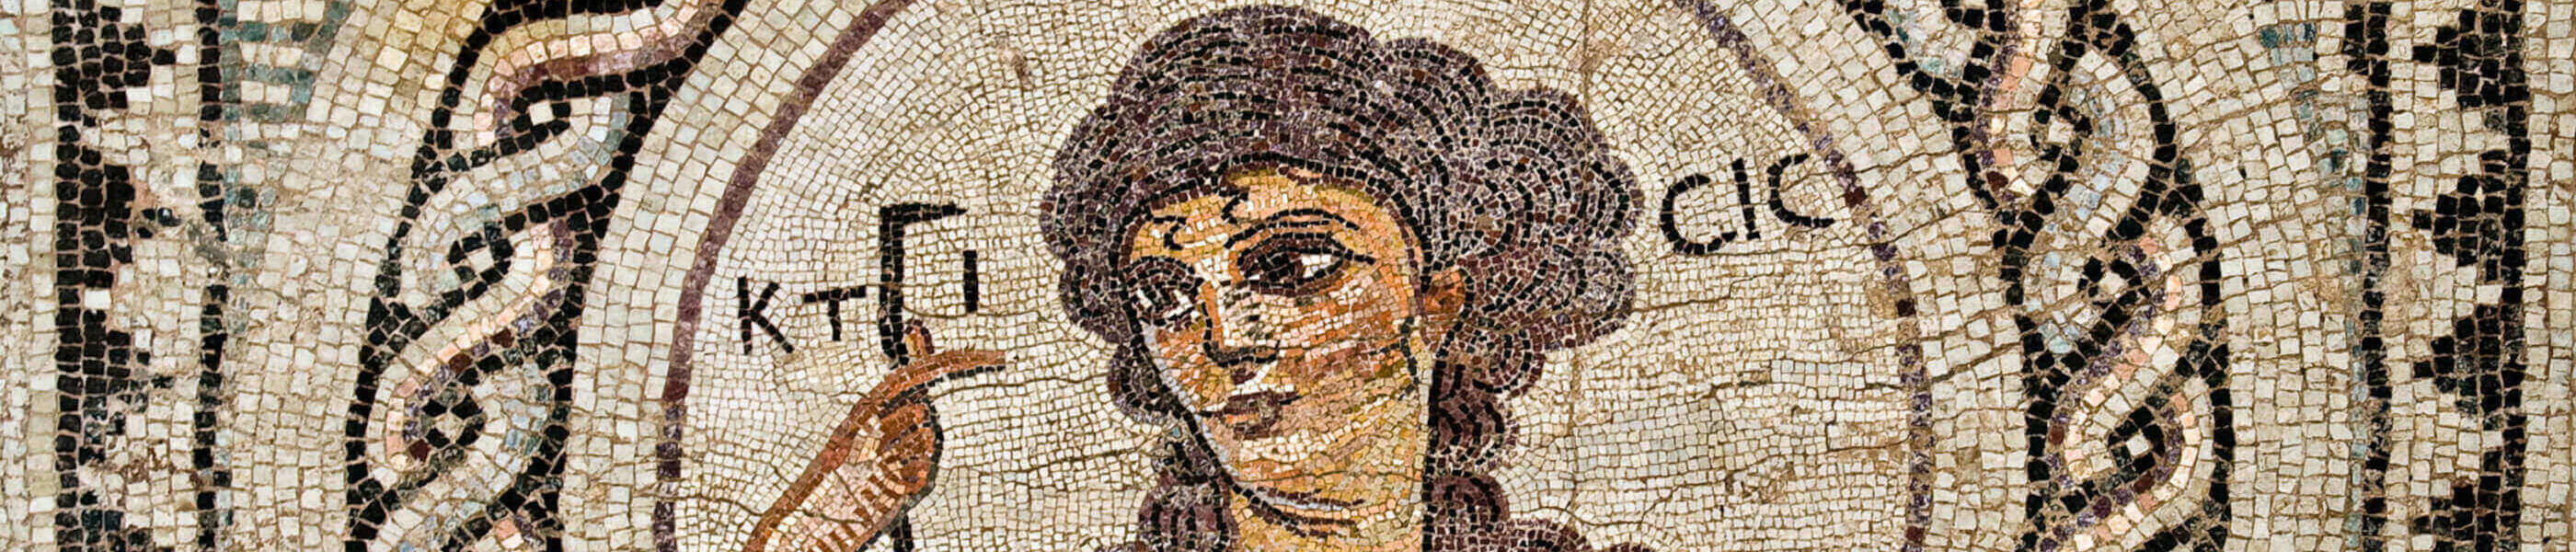 Bust of Ktisis, mosaic detail